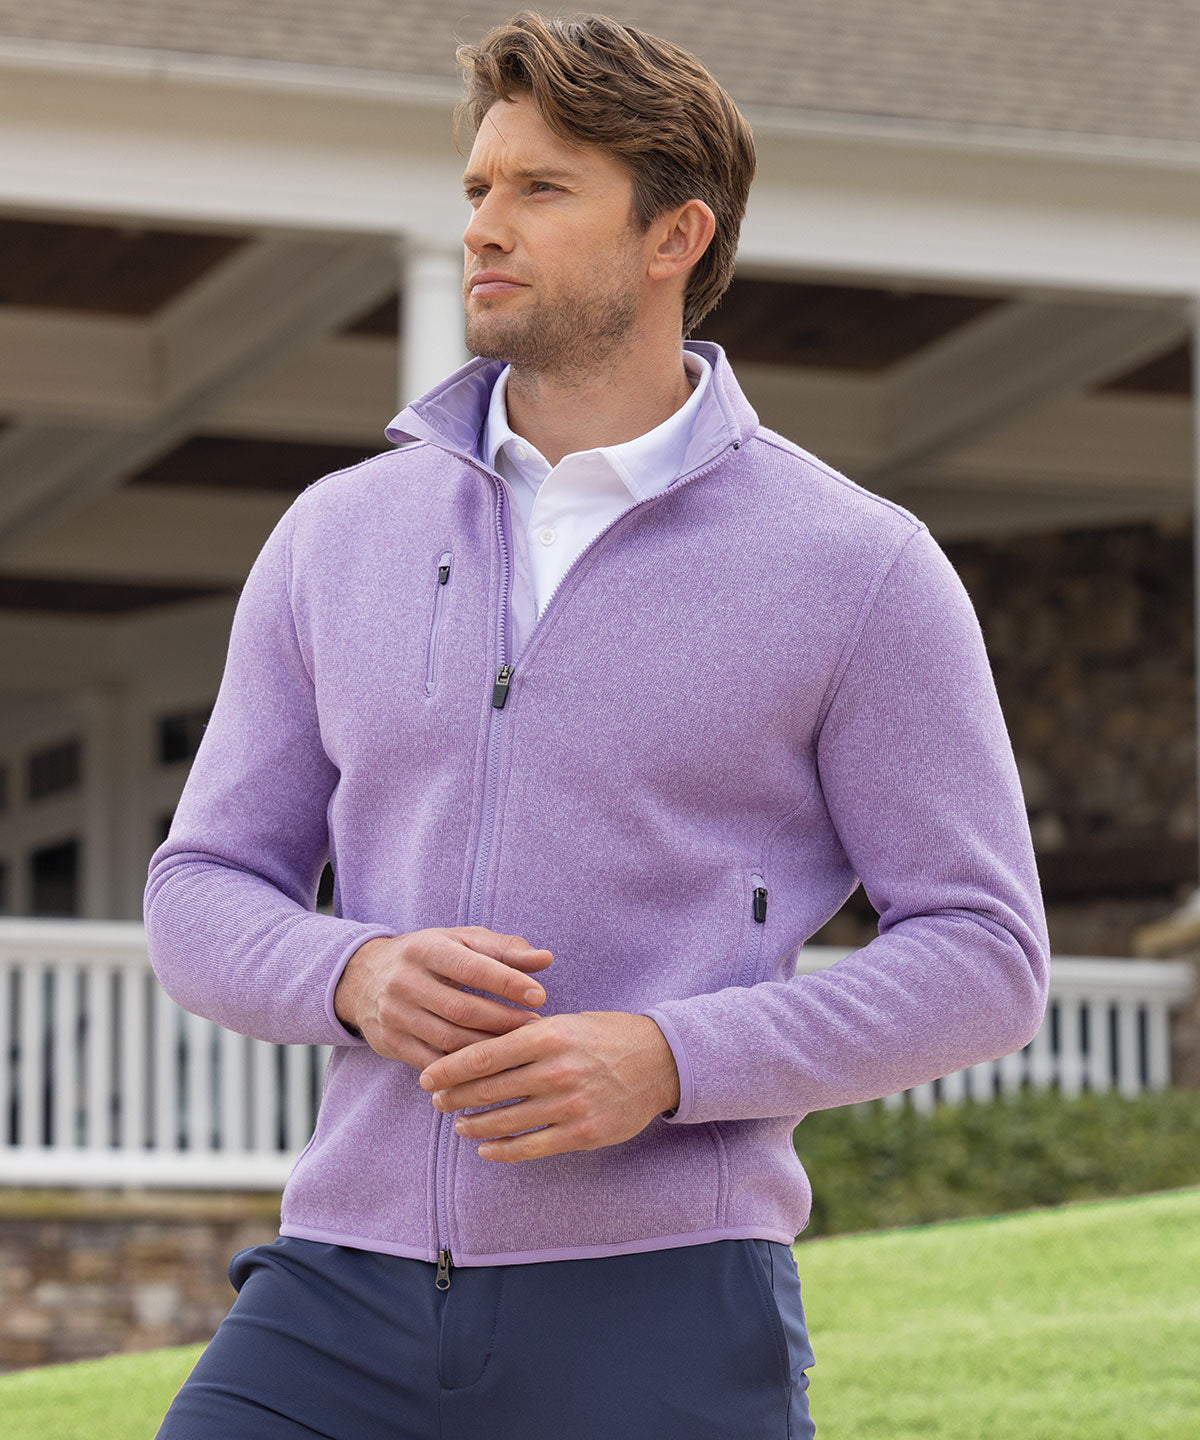 Men's Bean's Sweater Fleece, Hooded Full-Zip Jacket